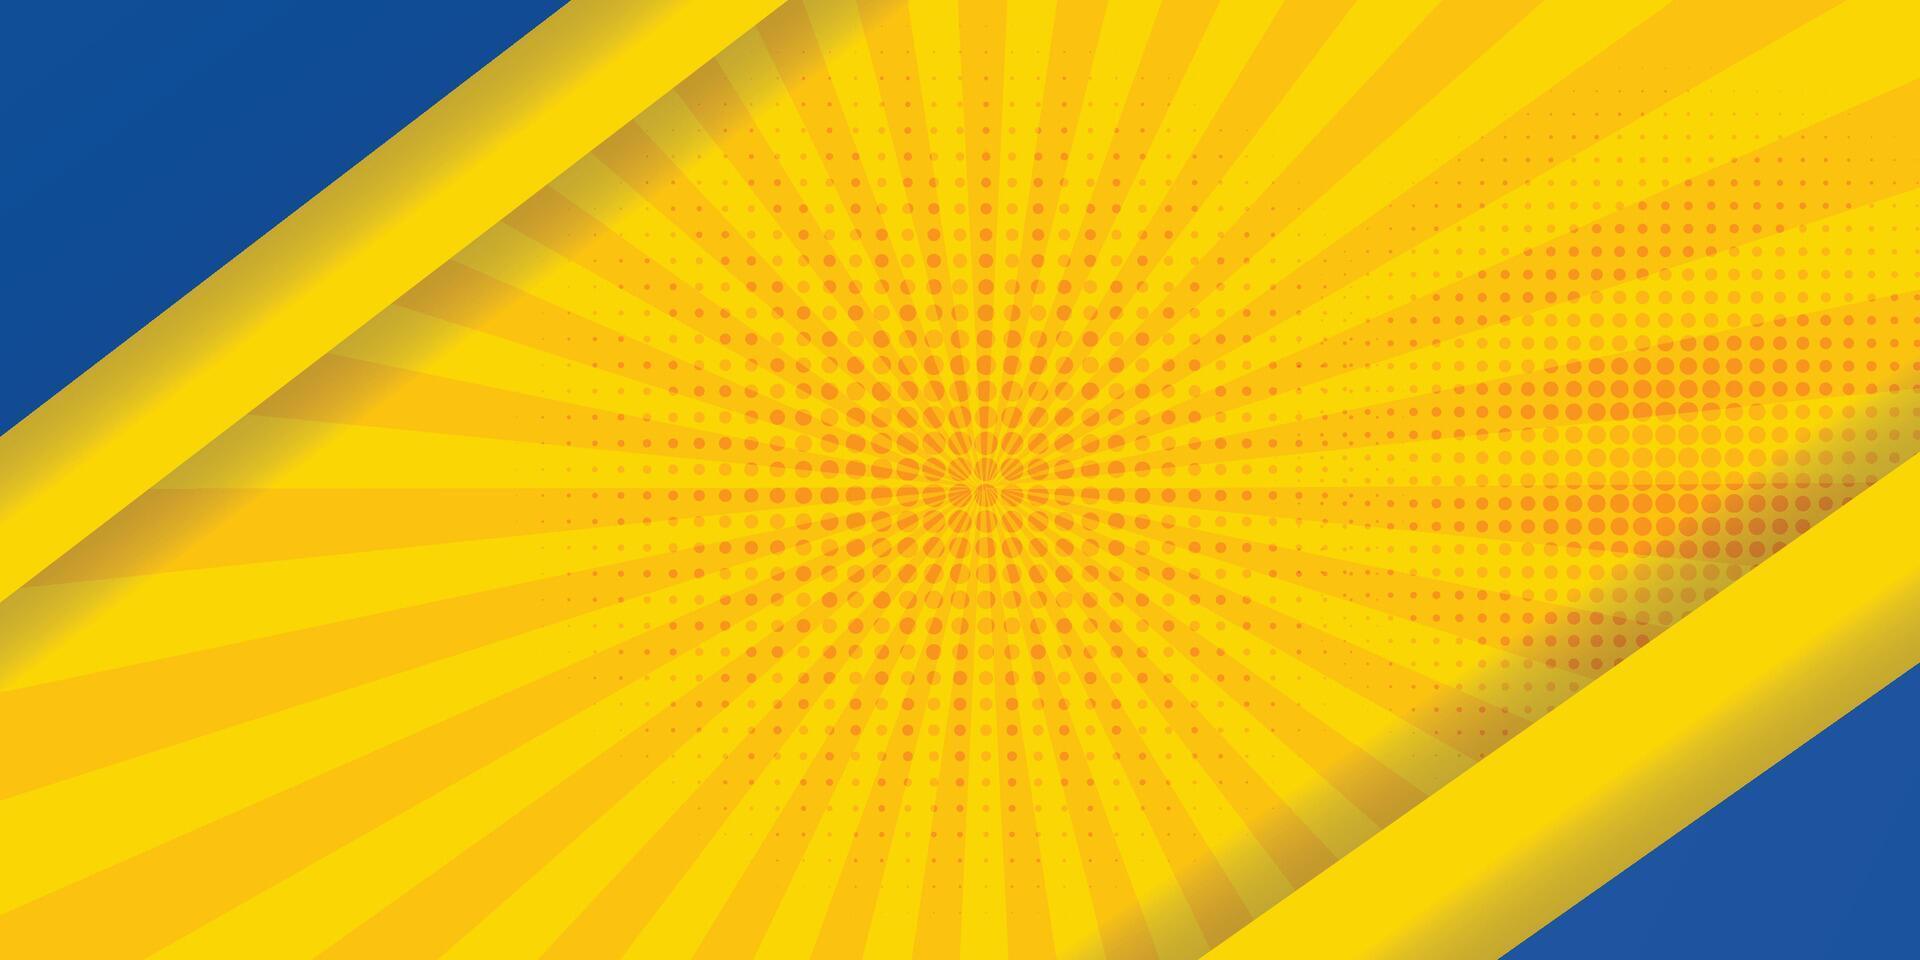 gráfico futurista hipster moderno de fondo abstracto. fondo amarillo con rayas. diseño de textura de fondo abstracto vectorial, póster brillante, ilustración de vector de fondo amarillo y azul de banner.